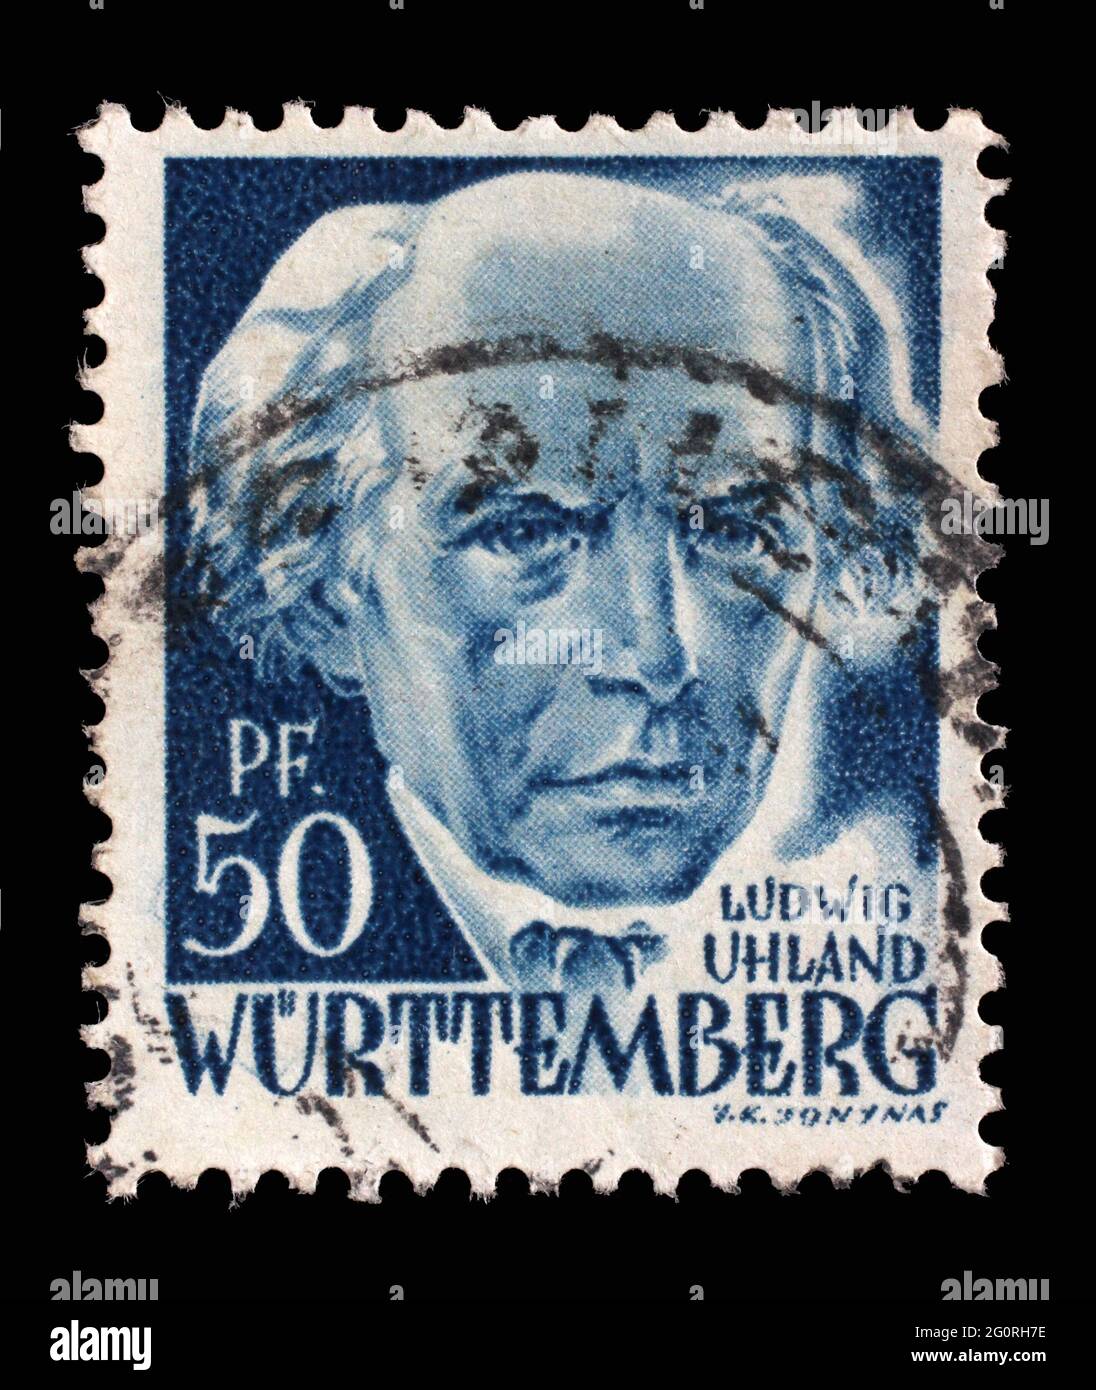 Timbre imprimé en Allemagne, l'occupation française du Wurtemberg montre Ludwig Uhland, poète, philologue et historien littéraire, vers 1948 Banque D'Images